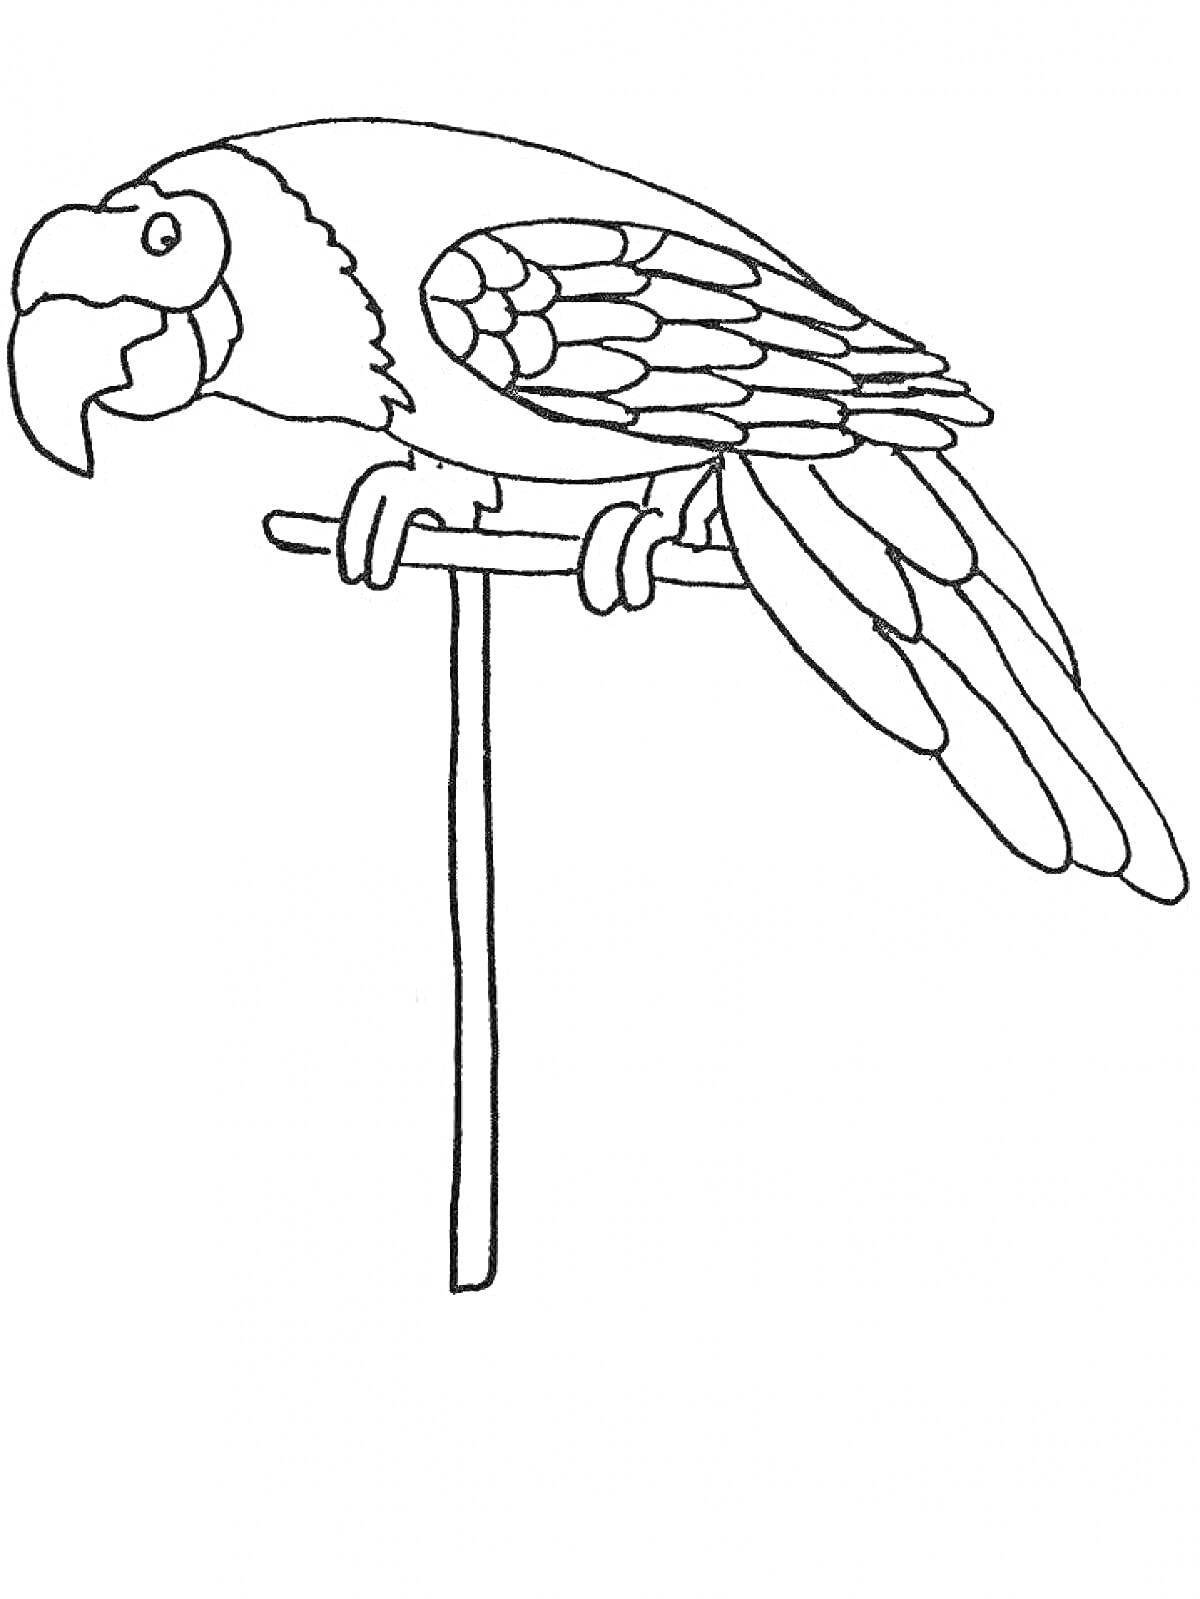 Раскраска Попугай сидящий на ветке (картинка для раскрашивания)